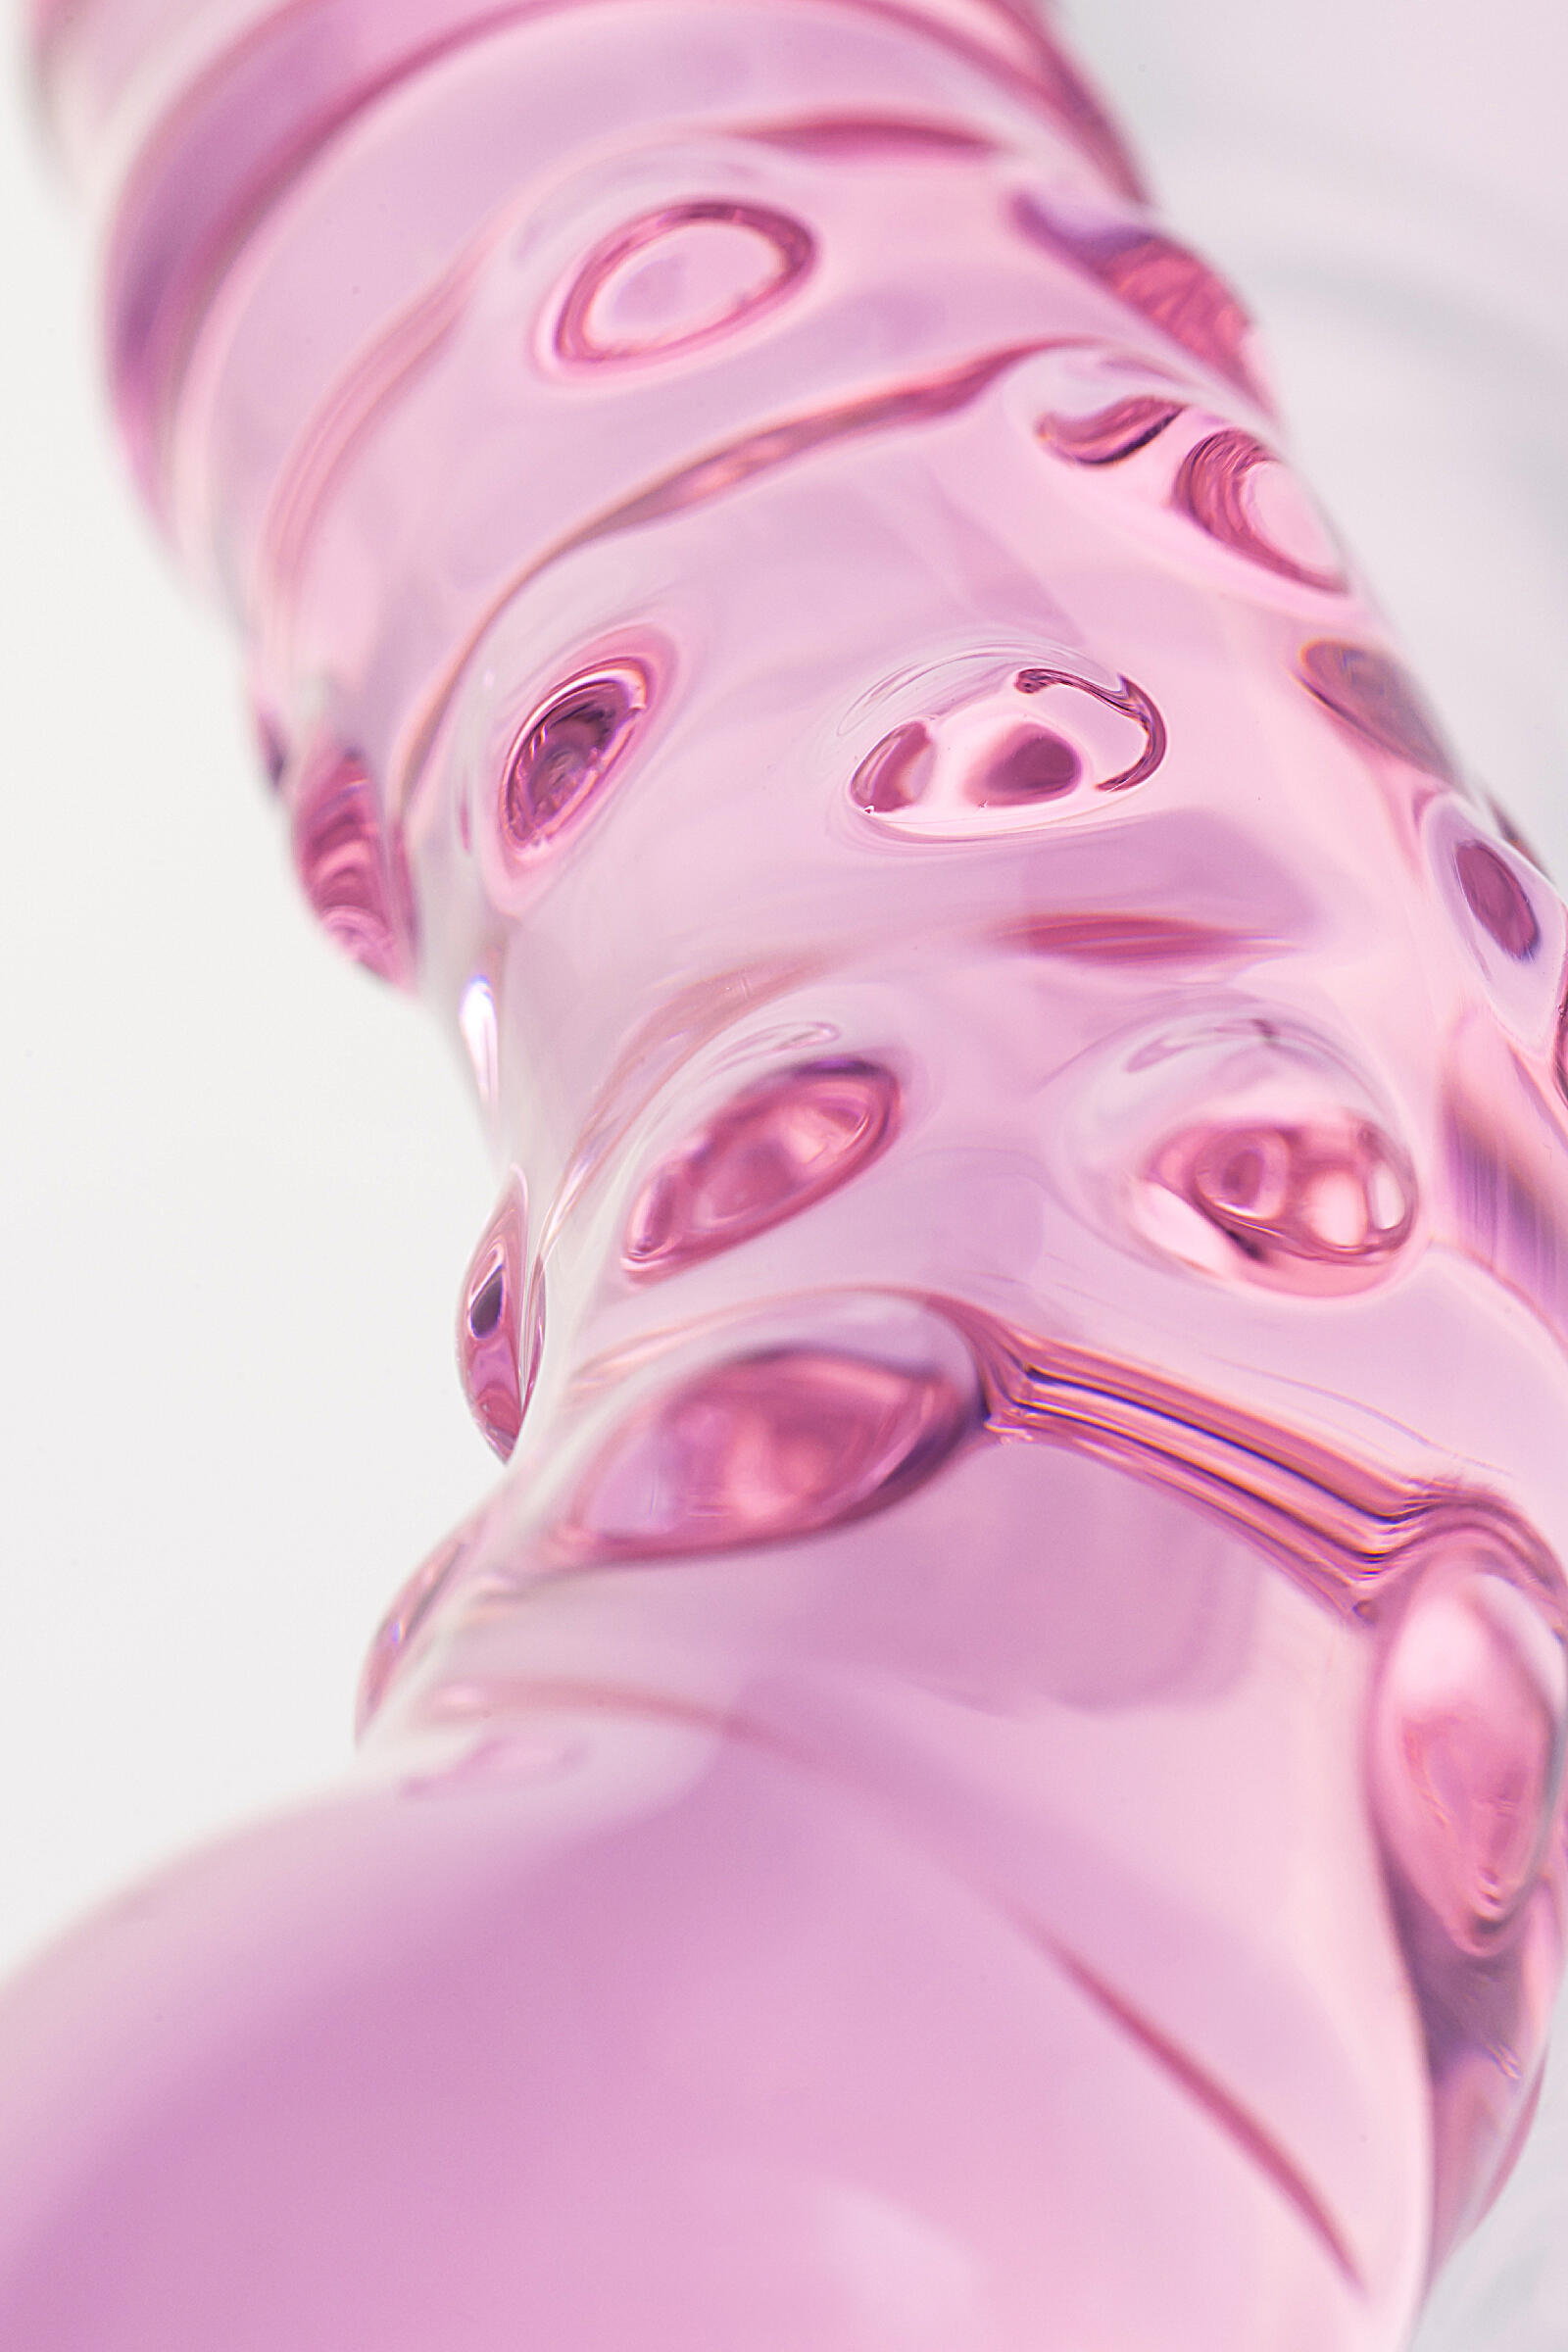 Двусторонний стимулятор Sexus Glass 20.5 см, розовый